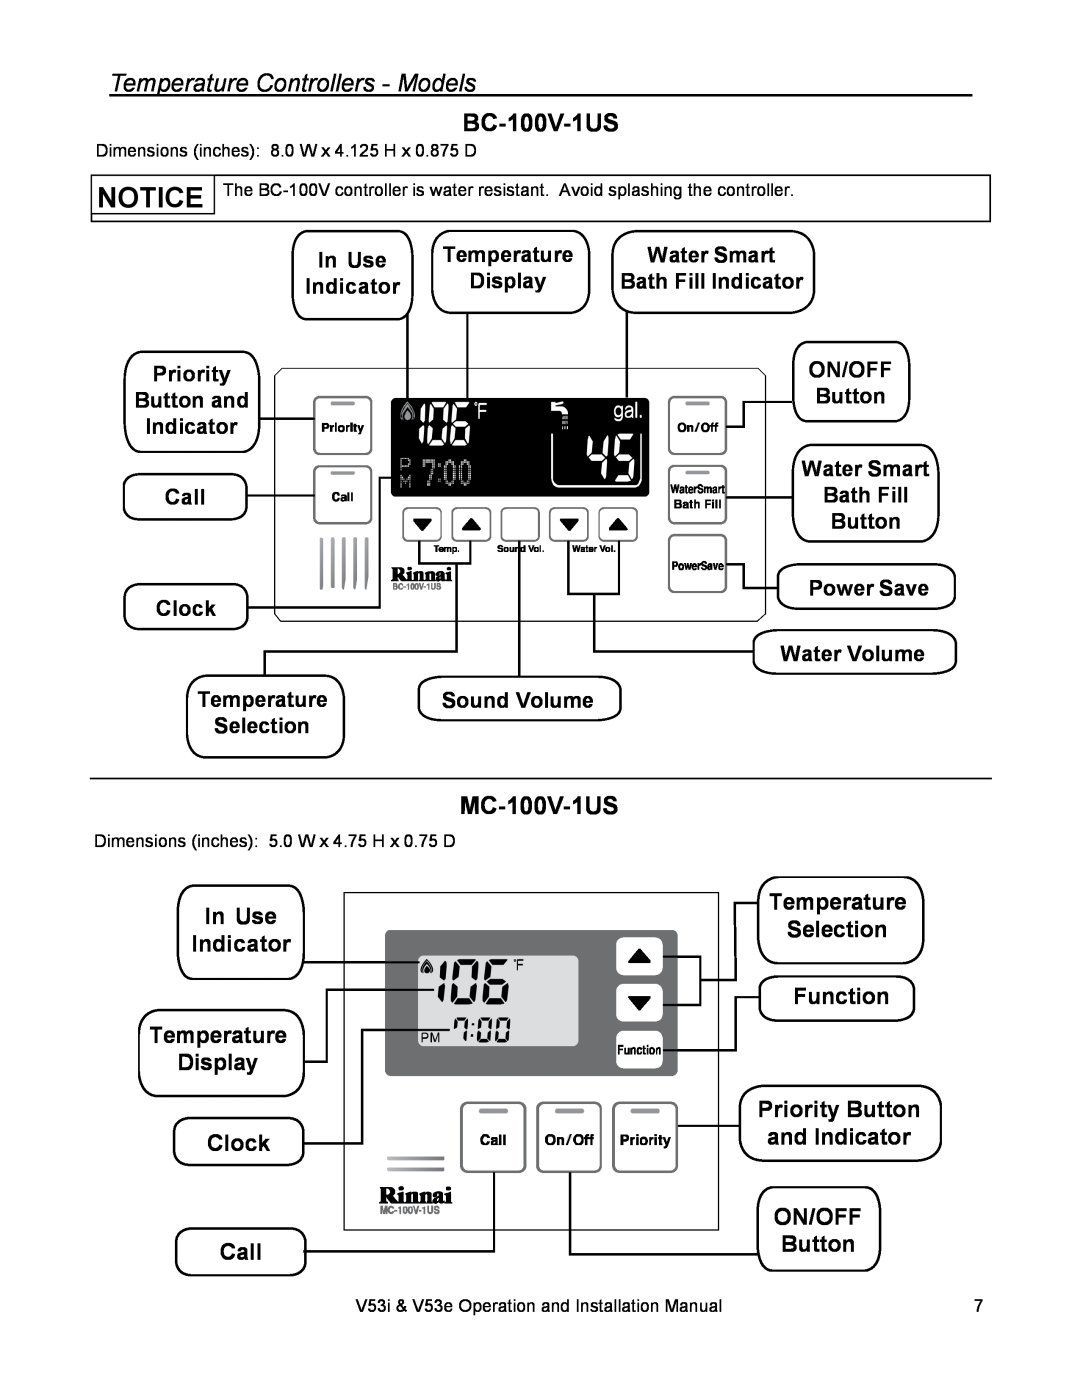 Rinnai V53I BC-100V-1US, MC-100V-1US, In Use Indicator Temperature Display Clock Call, Temperature Selection Function 